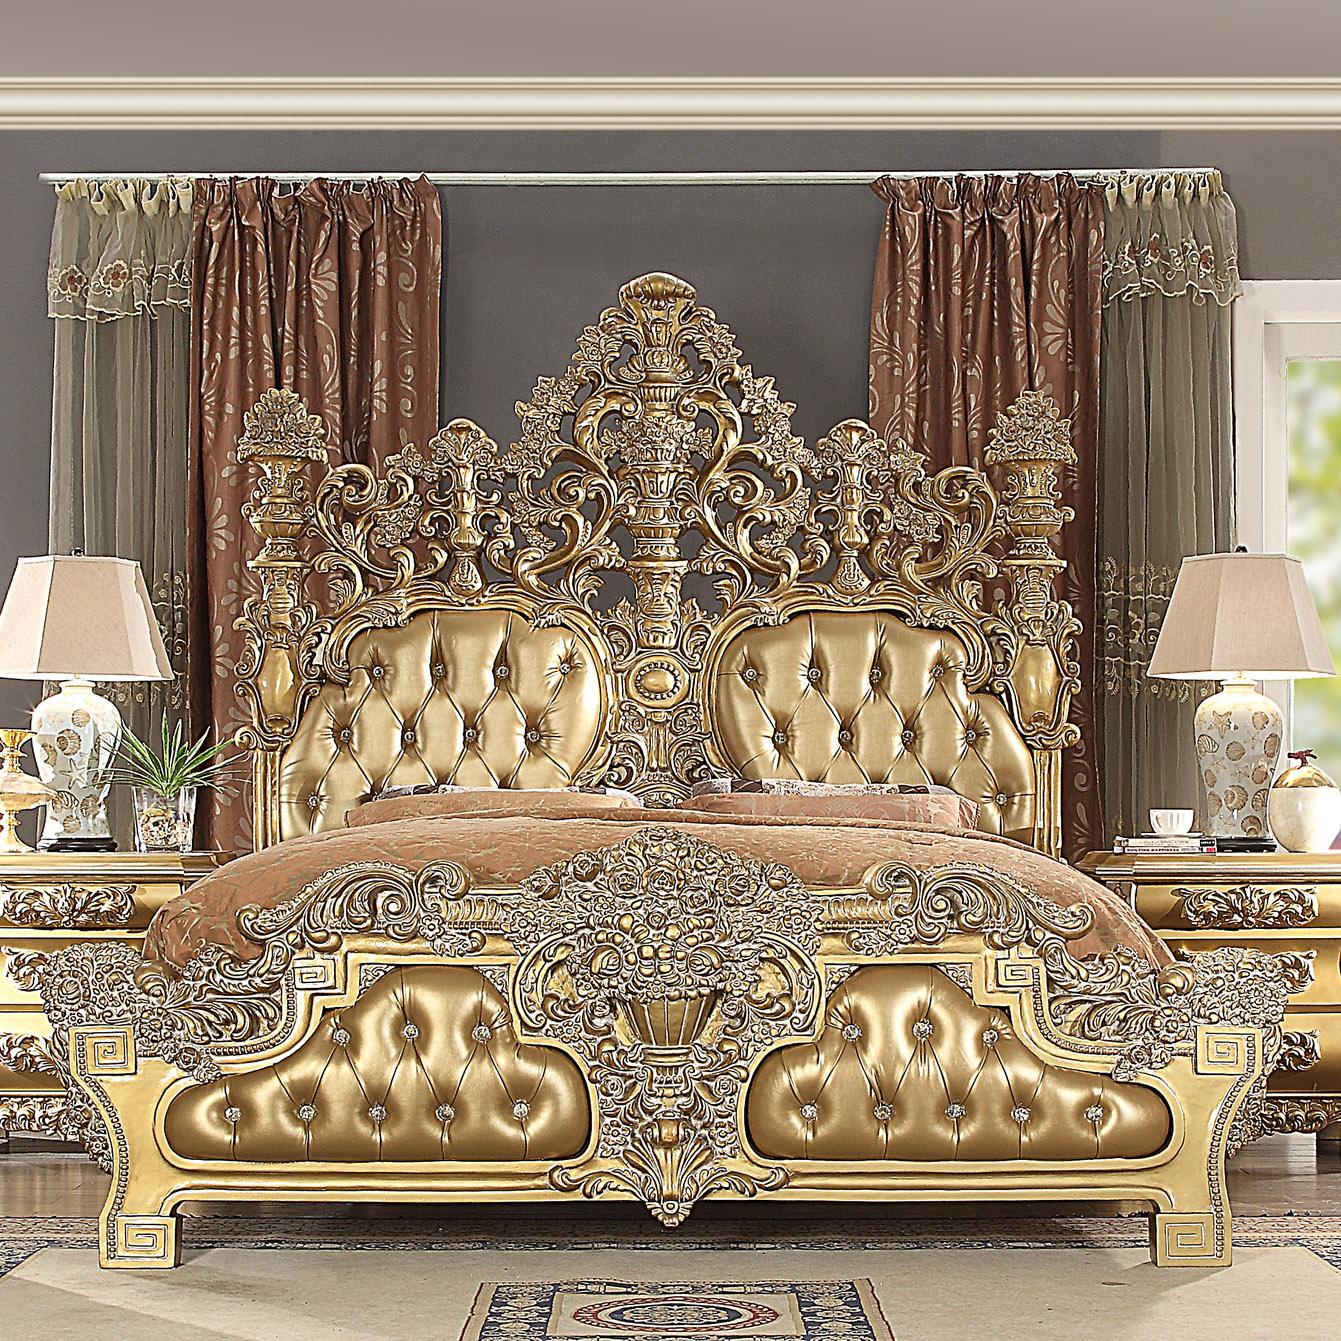 

    
Homey Design Furniture HD-8016 – CK BED SET Panel Bedroom Set Rich Gold/Gold Finish HD-8016-BSET5-CK
